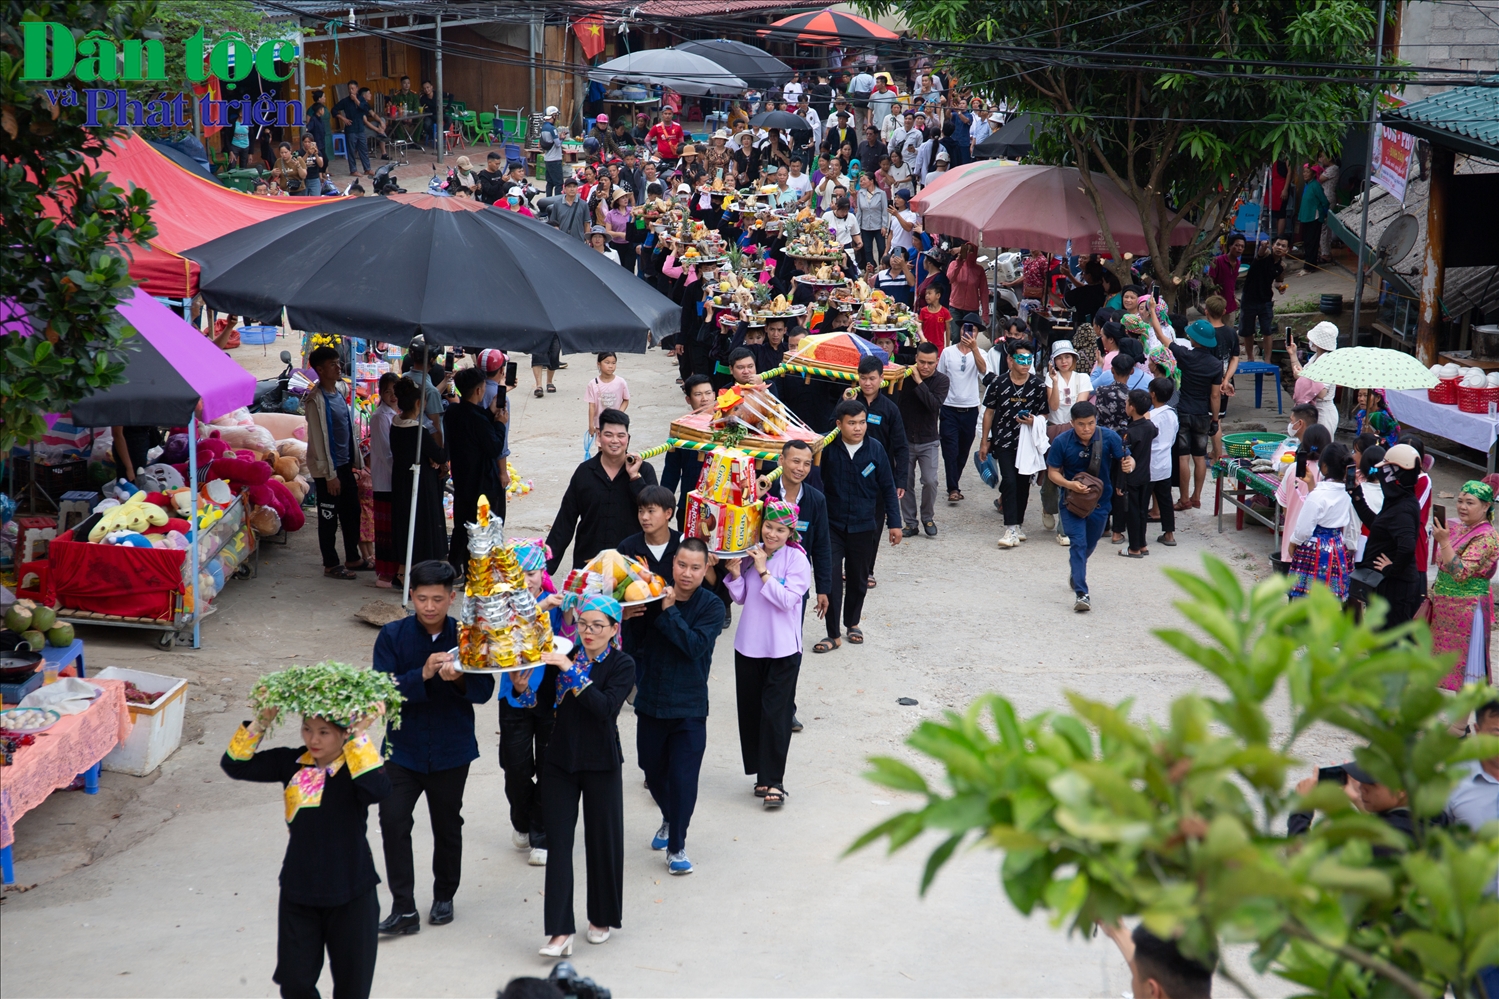 Uỷ ban nhân dân huyện Mèo Vạc đã tổ chức Lễ dâng hương miếu Ông, miếu Bà, nhằm tưởng nhớ về câu chuyện tình cảm động của chàng Ba, nàng Út. Đây là hoạt động mở đầu Lễ hội chợ Phong Lưu Khâu Vai năm 2024.